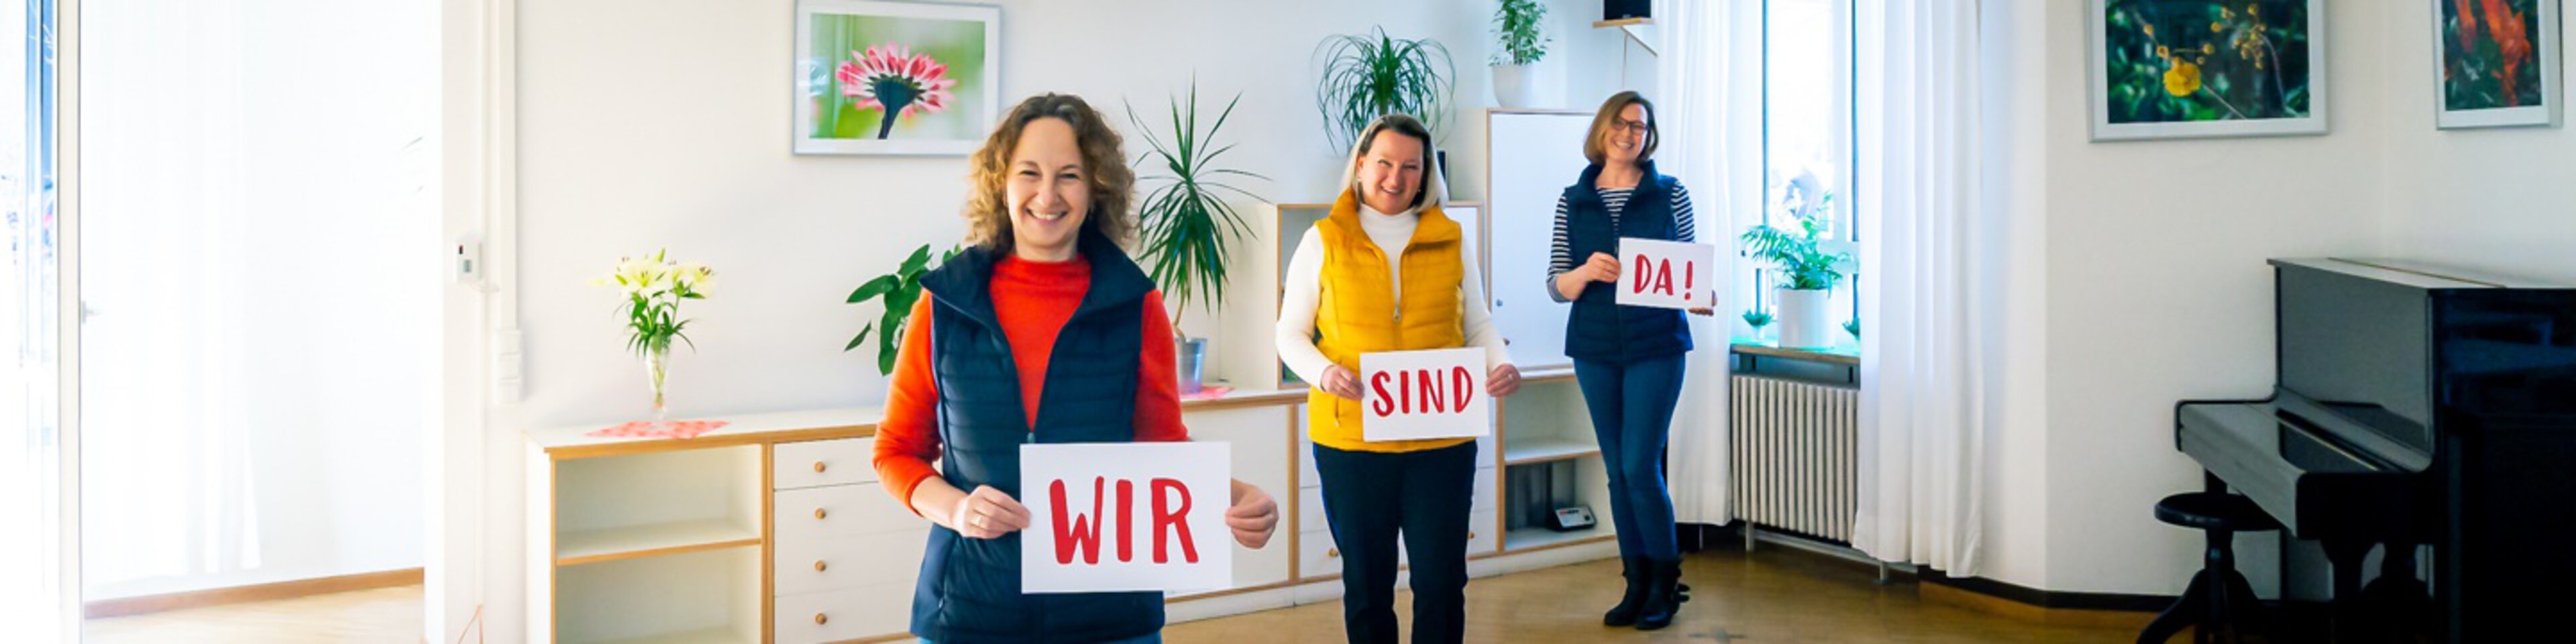 Drei freundliche Frauen halten Schilder mit den Worten "Wir sind da" hoch | © Stefan Dehmel